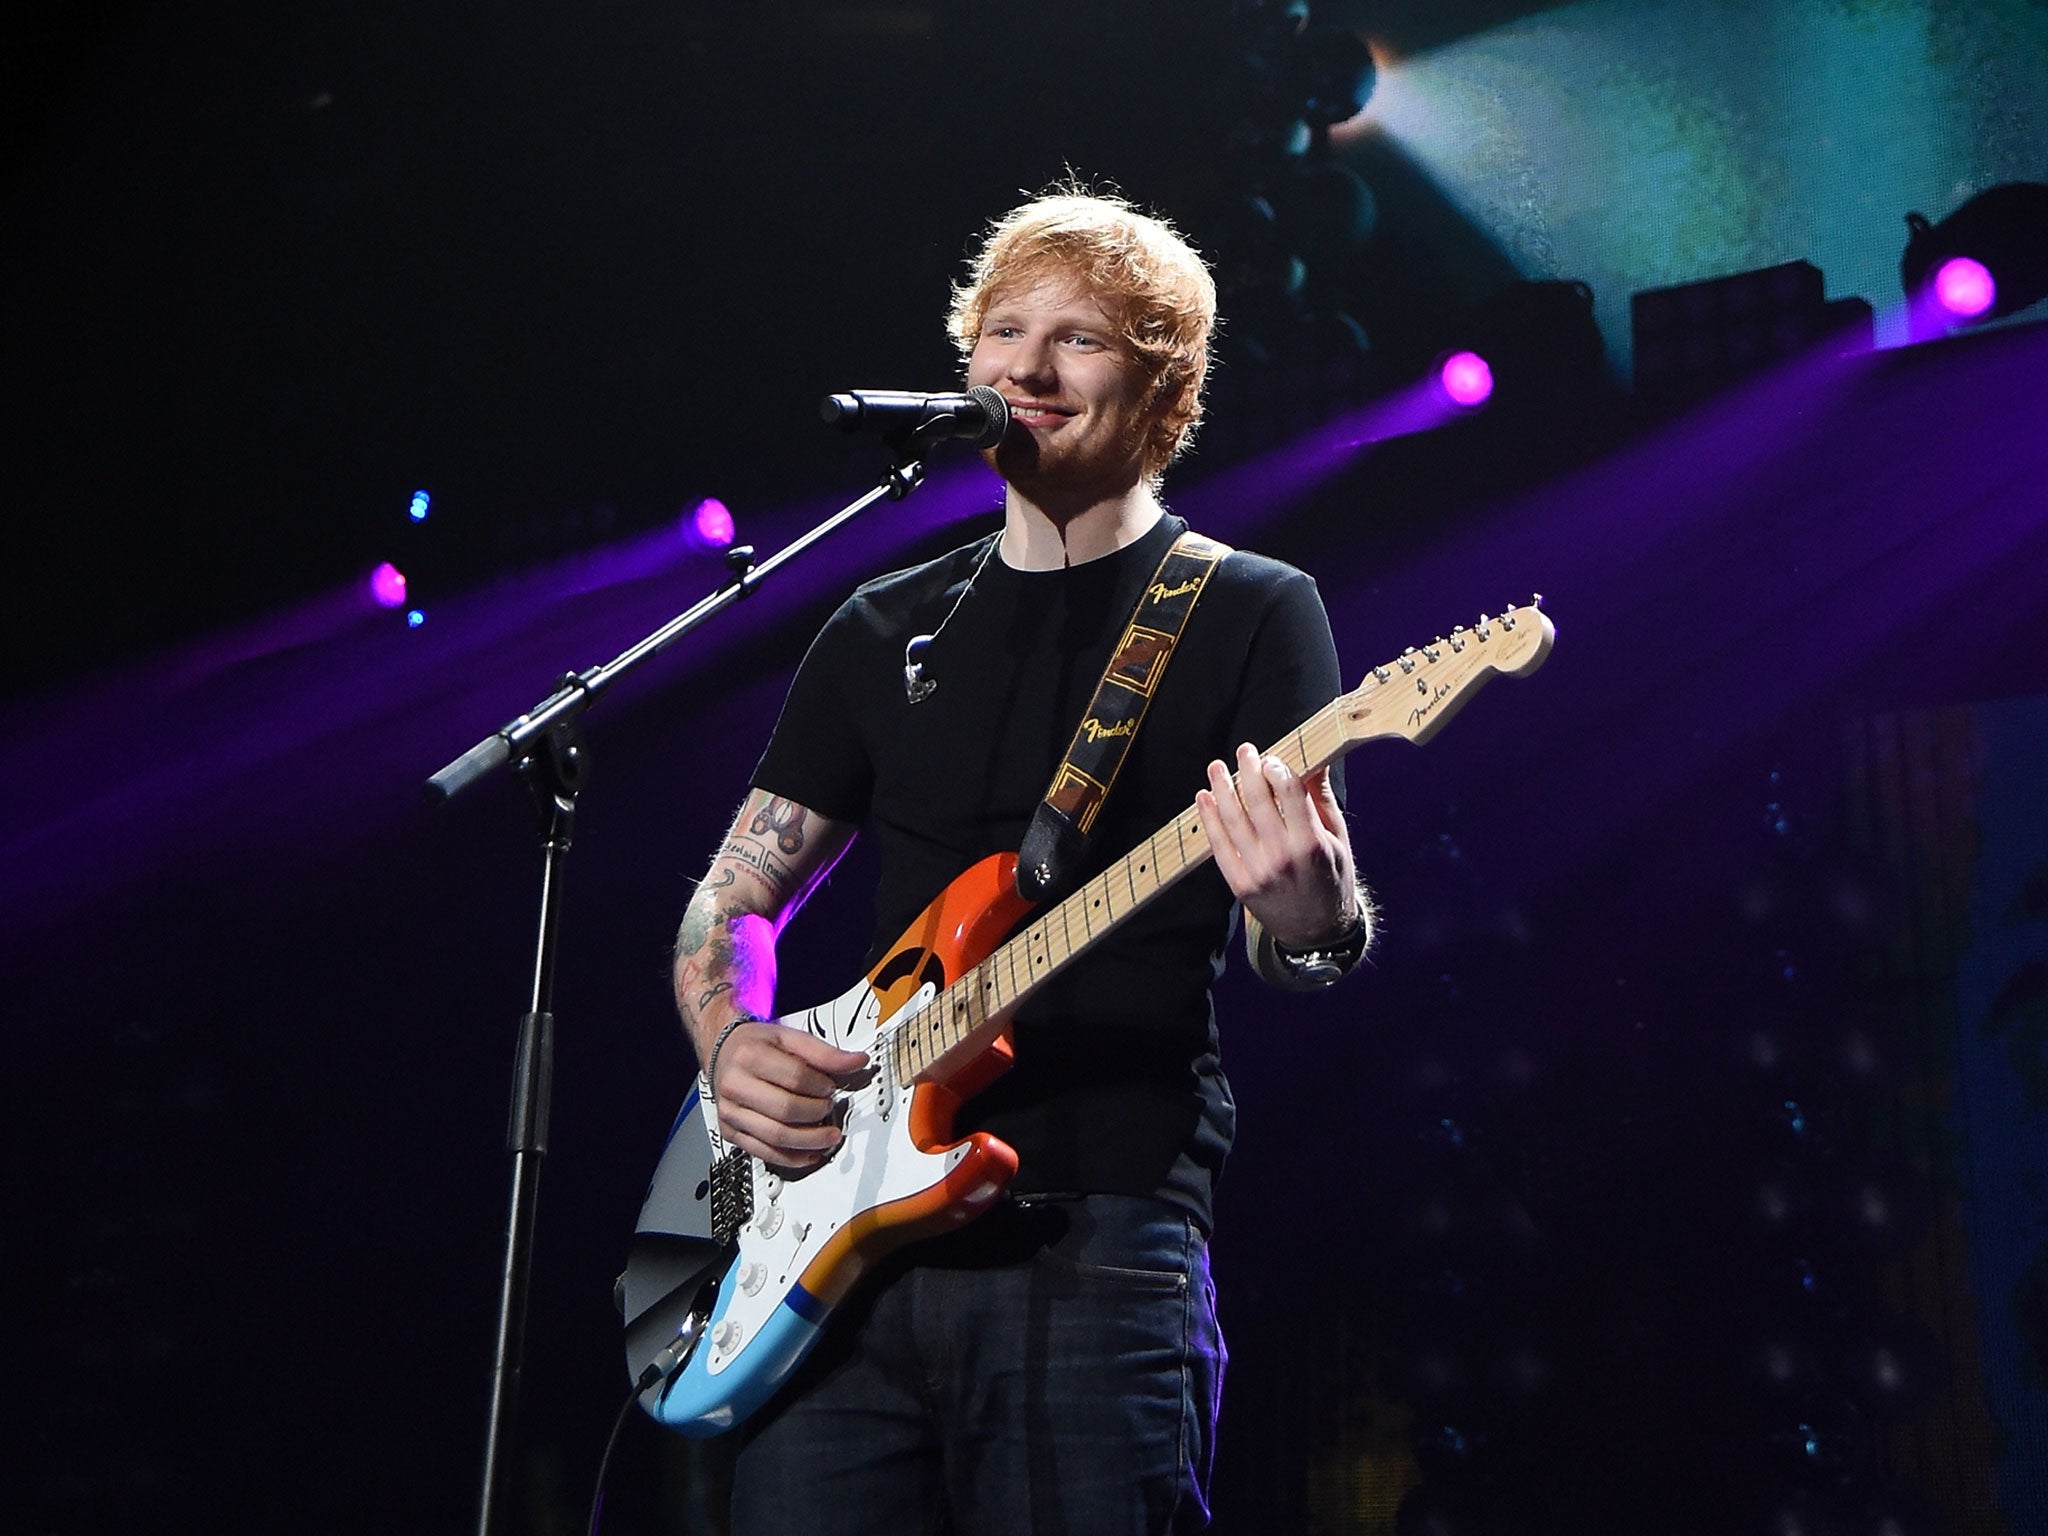 Ed Sheeran performs at KIIS FM's Jingle Ball